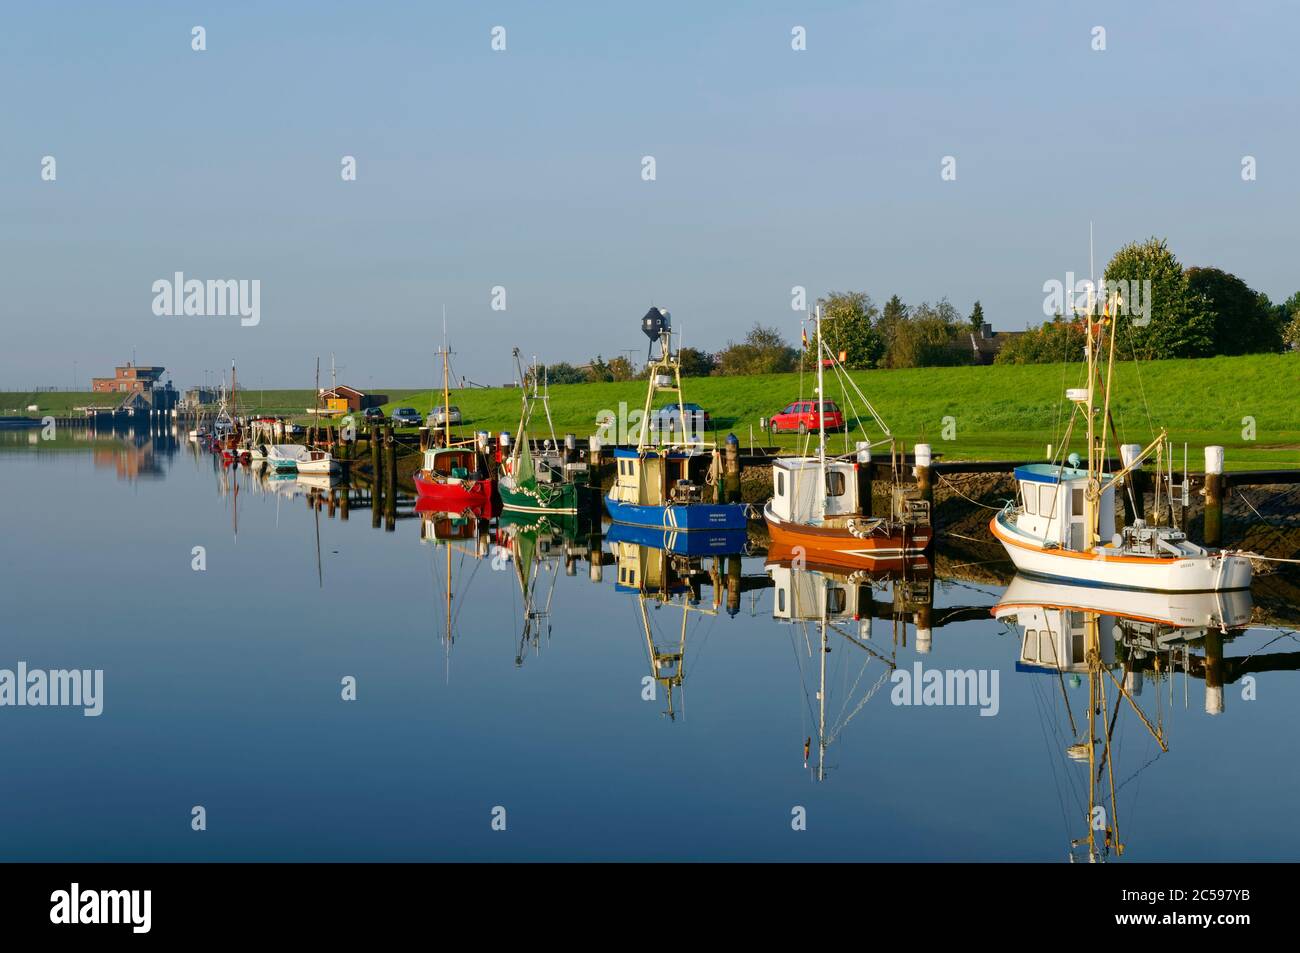 Friedrichskoog: Bateaux de pêche à la crevette et coupeurs de pêche dans l'ancien port (jusqu'en 2015), district de Dithmarschen, Schleswig-Holstein, Allemagne Banque D'Images